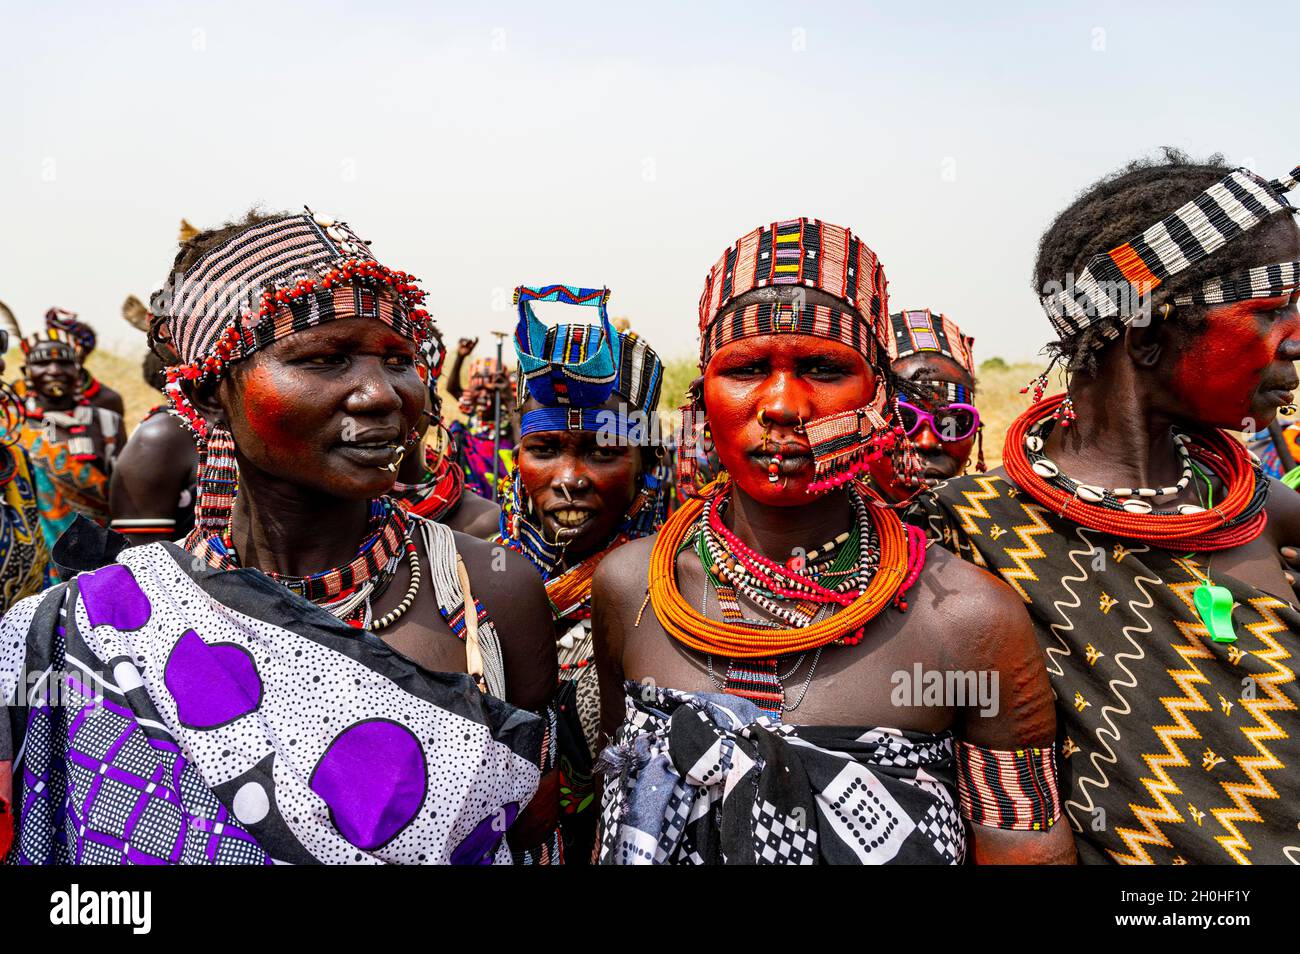 Traditionell gekleidete Frauen des Stammes der Jiye, Staat Eastern Equatoria, Südsudan Stockfoto